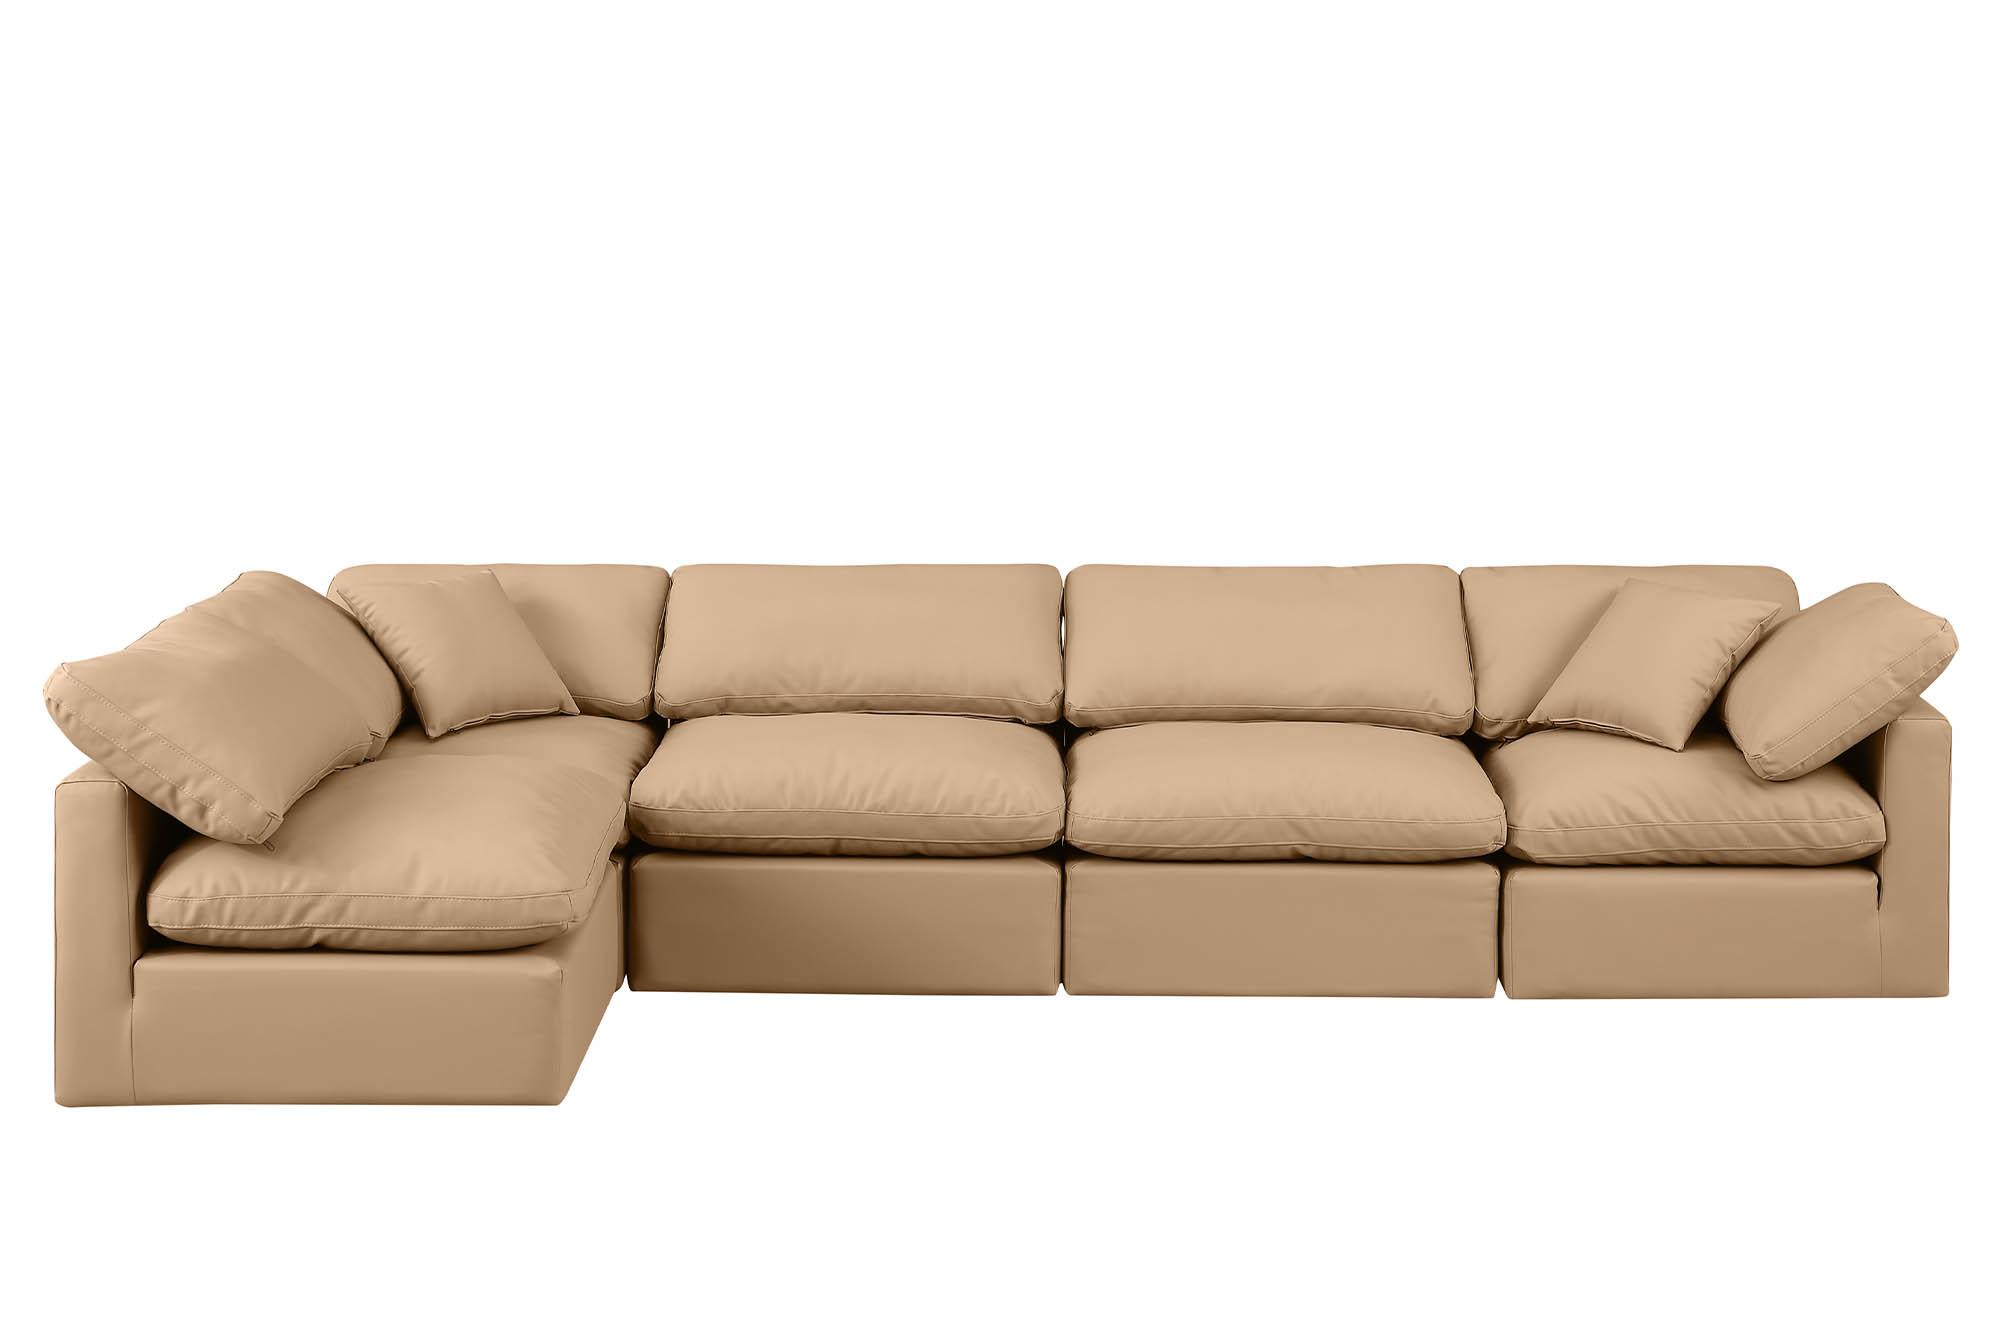 

    
Meridian Furniture INDULGE 146Tan-Sec5D Modular Sectional Sofa Tan 146Tan-Sec5D
